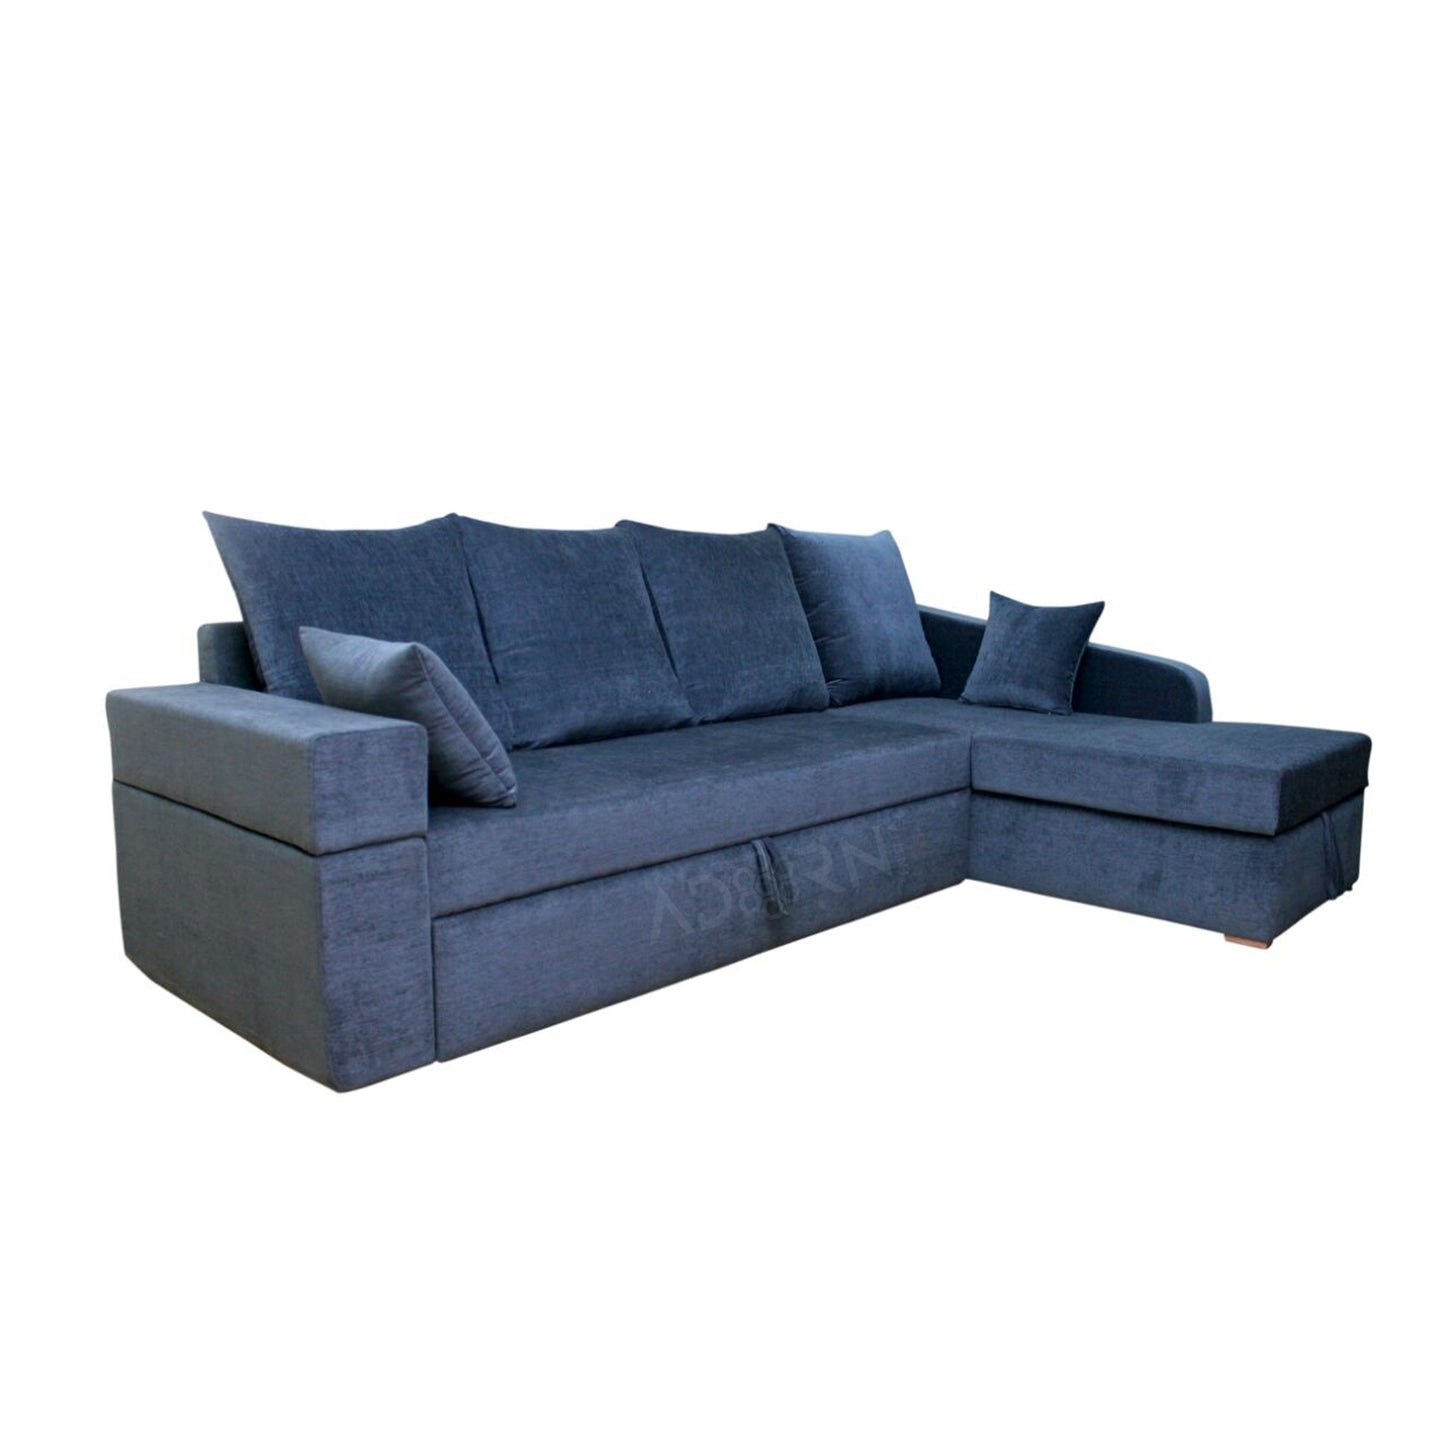 Adorn India Comfort Line Corner Cumbed 6 Seater Sofa (Grey)